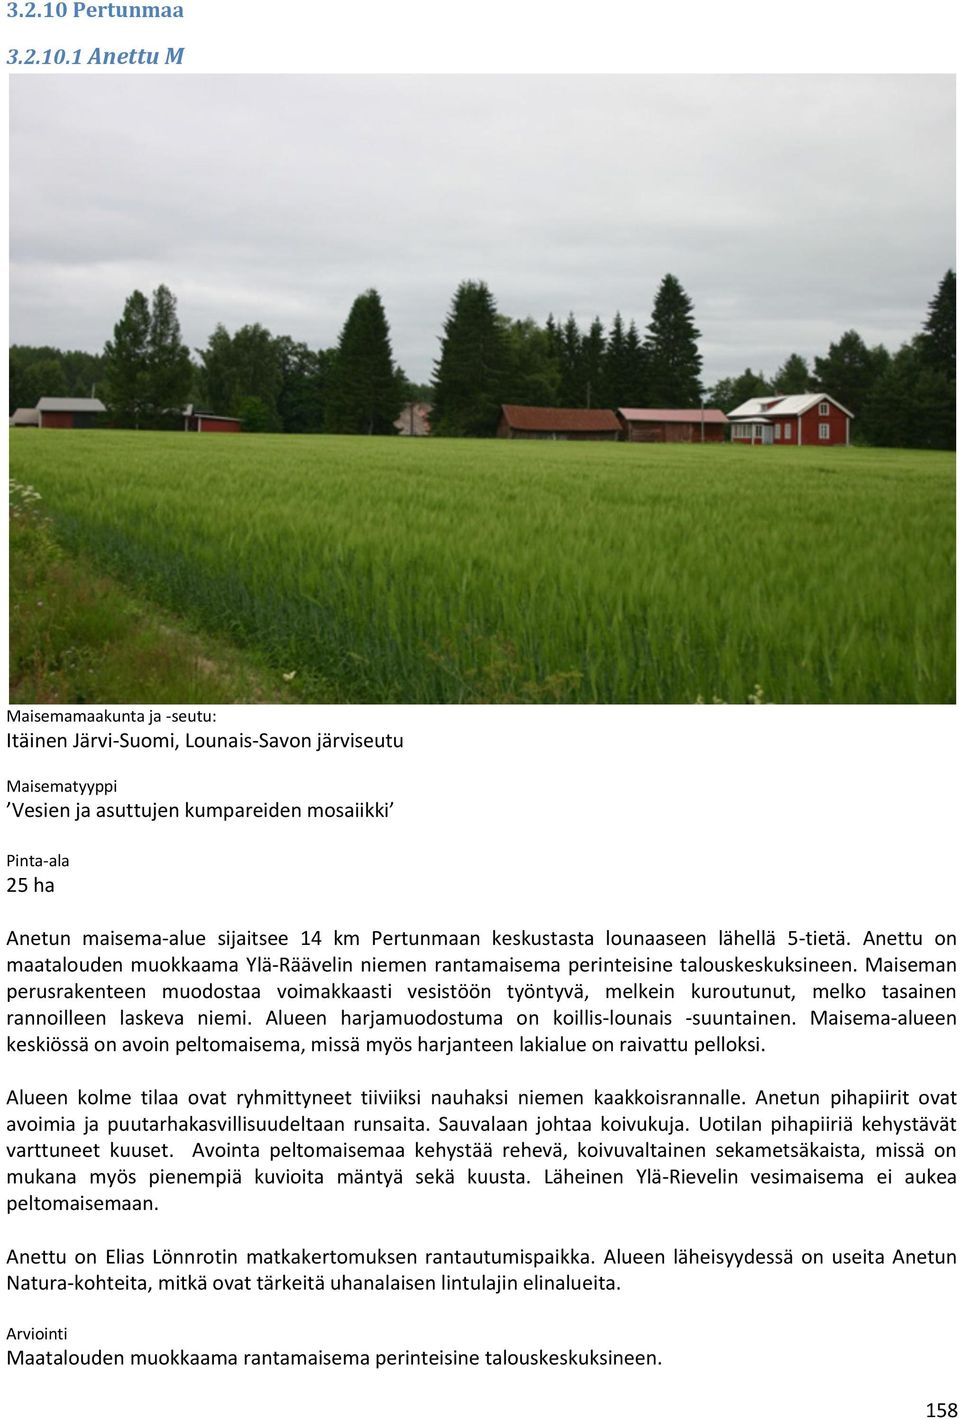 1 Anettu M Maisemamaakunta ja -seutu: Itäinen Järvi-Suomi, Lounais-Savon järviseutu Maisematyyppi Vesien ja asuttujen kumpareiden mosaiikki Pinta-ala 25 ha Anetun maisema-alue sijaitsee 14 km